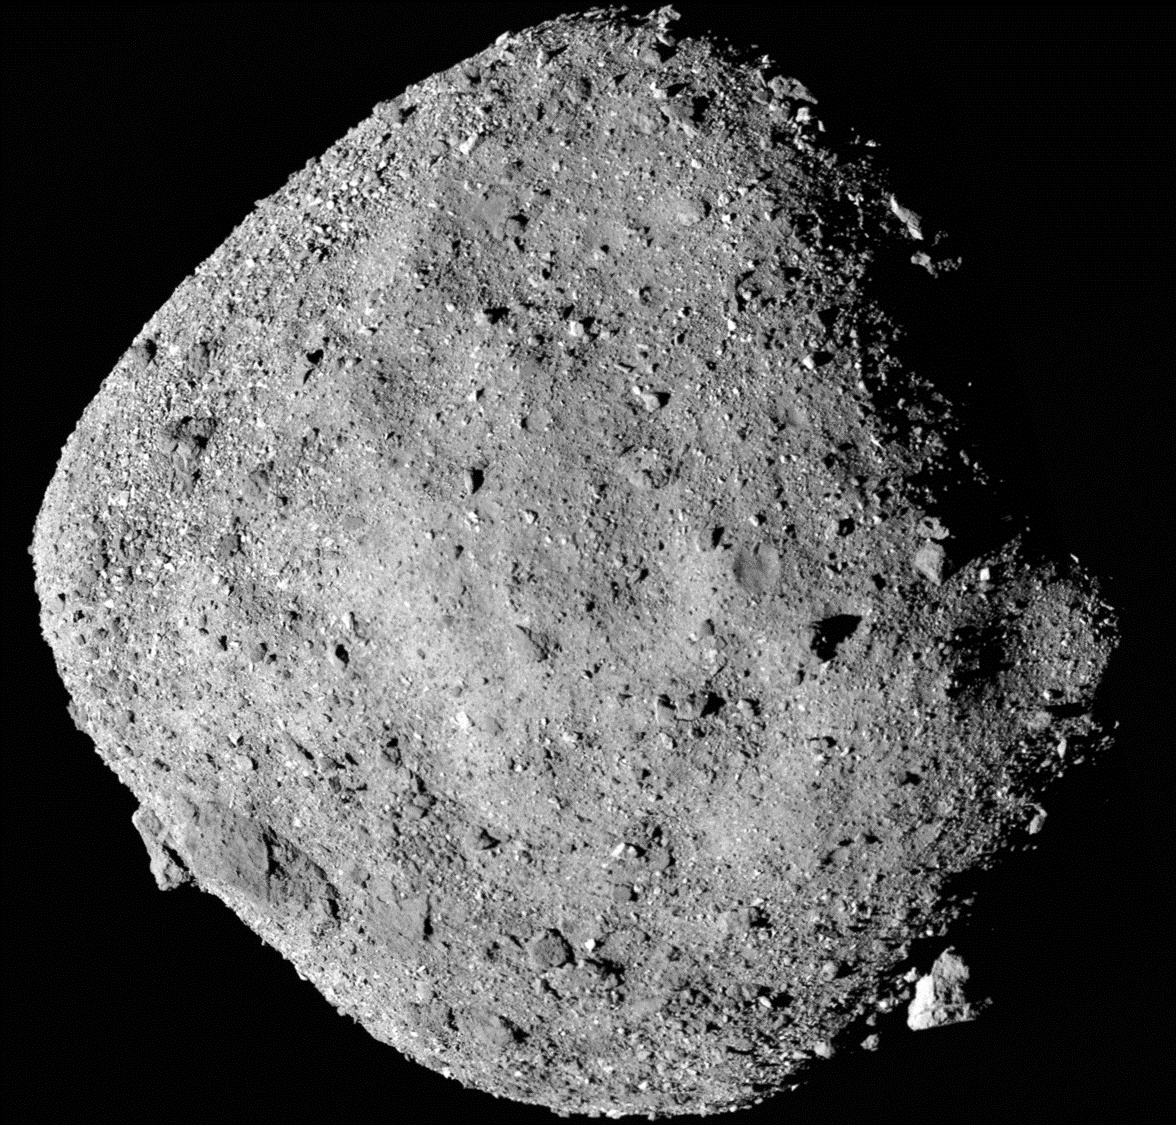 Nave espacial de la Nasa comienza viaje de regreso a la Tierra tras recolectar muestras de asteroides